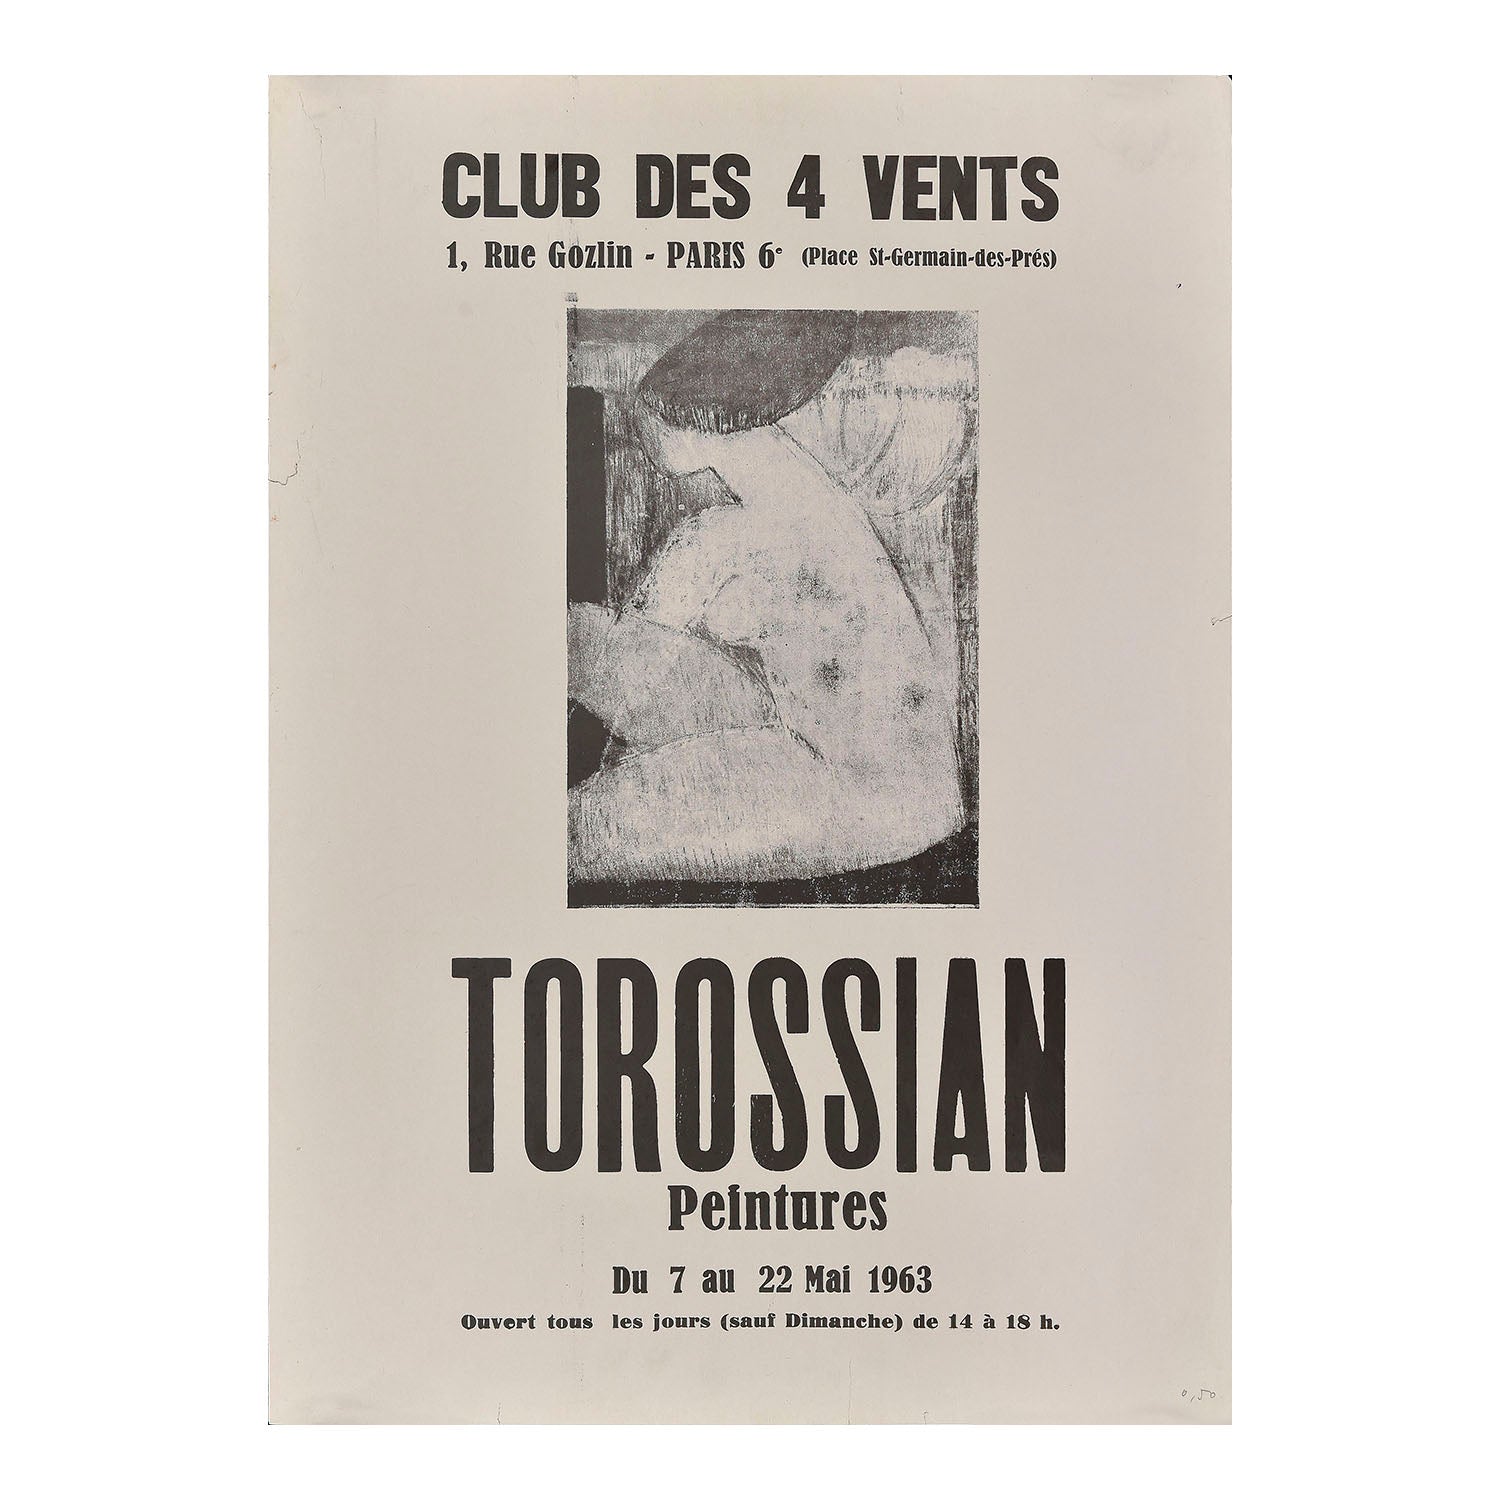 Original art exhibition poster, Torossian Peintures, Club Des 4 Vents, Paris 1963